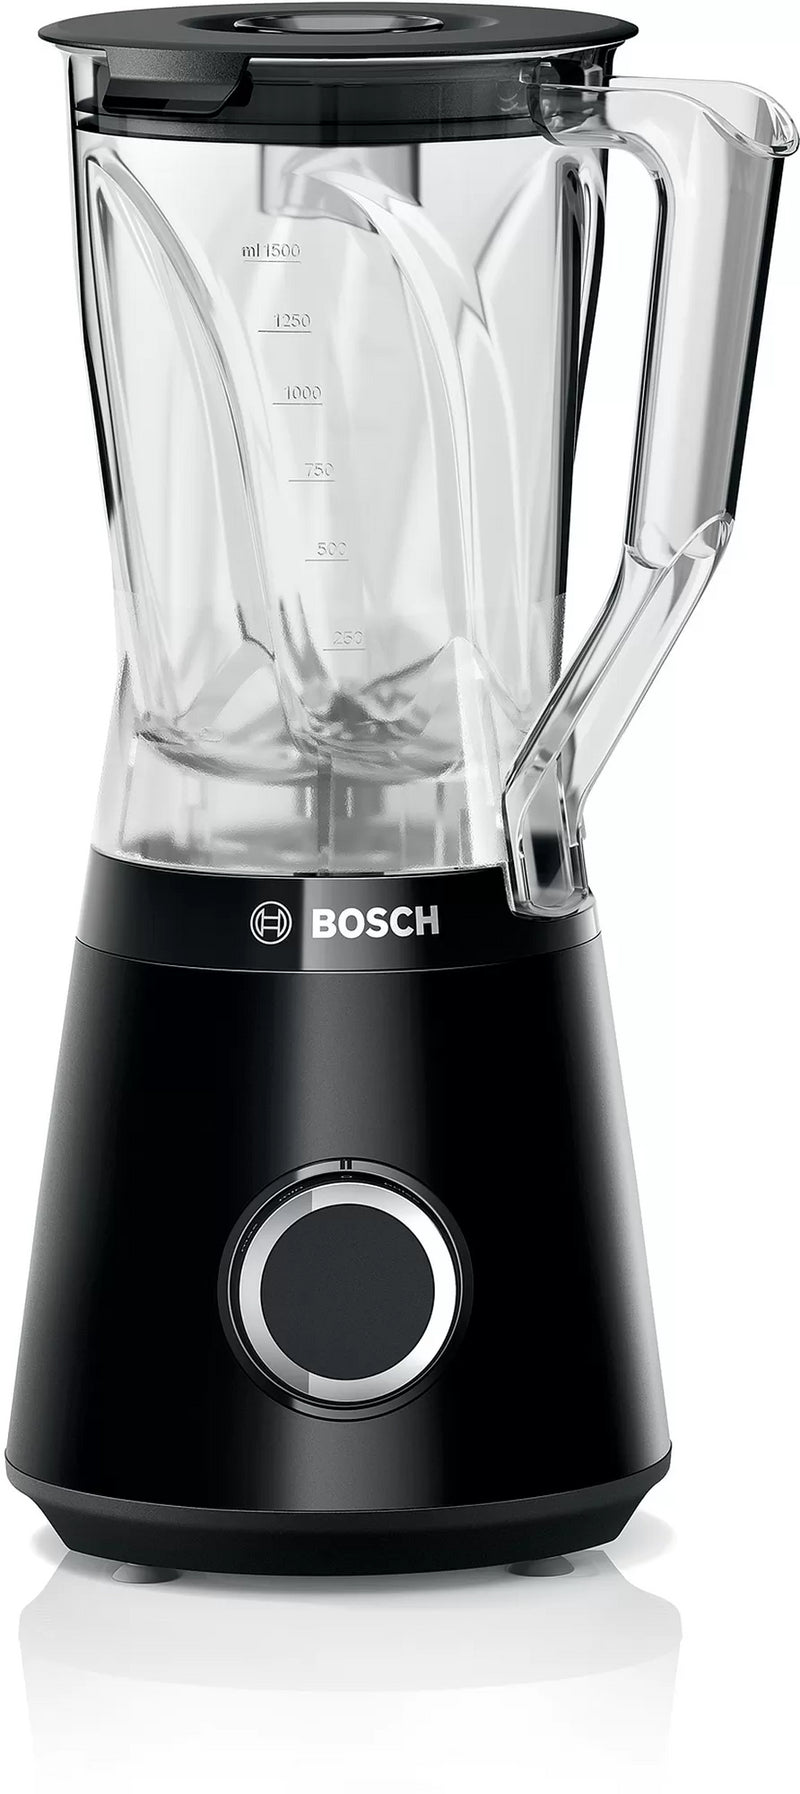 Bosch Blender VitaPower Serie 4 1200 W Sort - MMB6141B